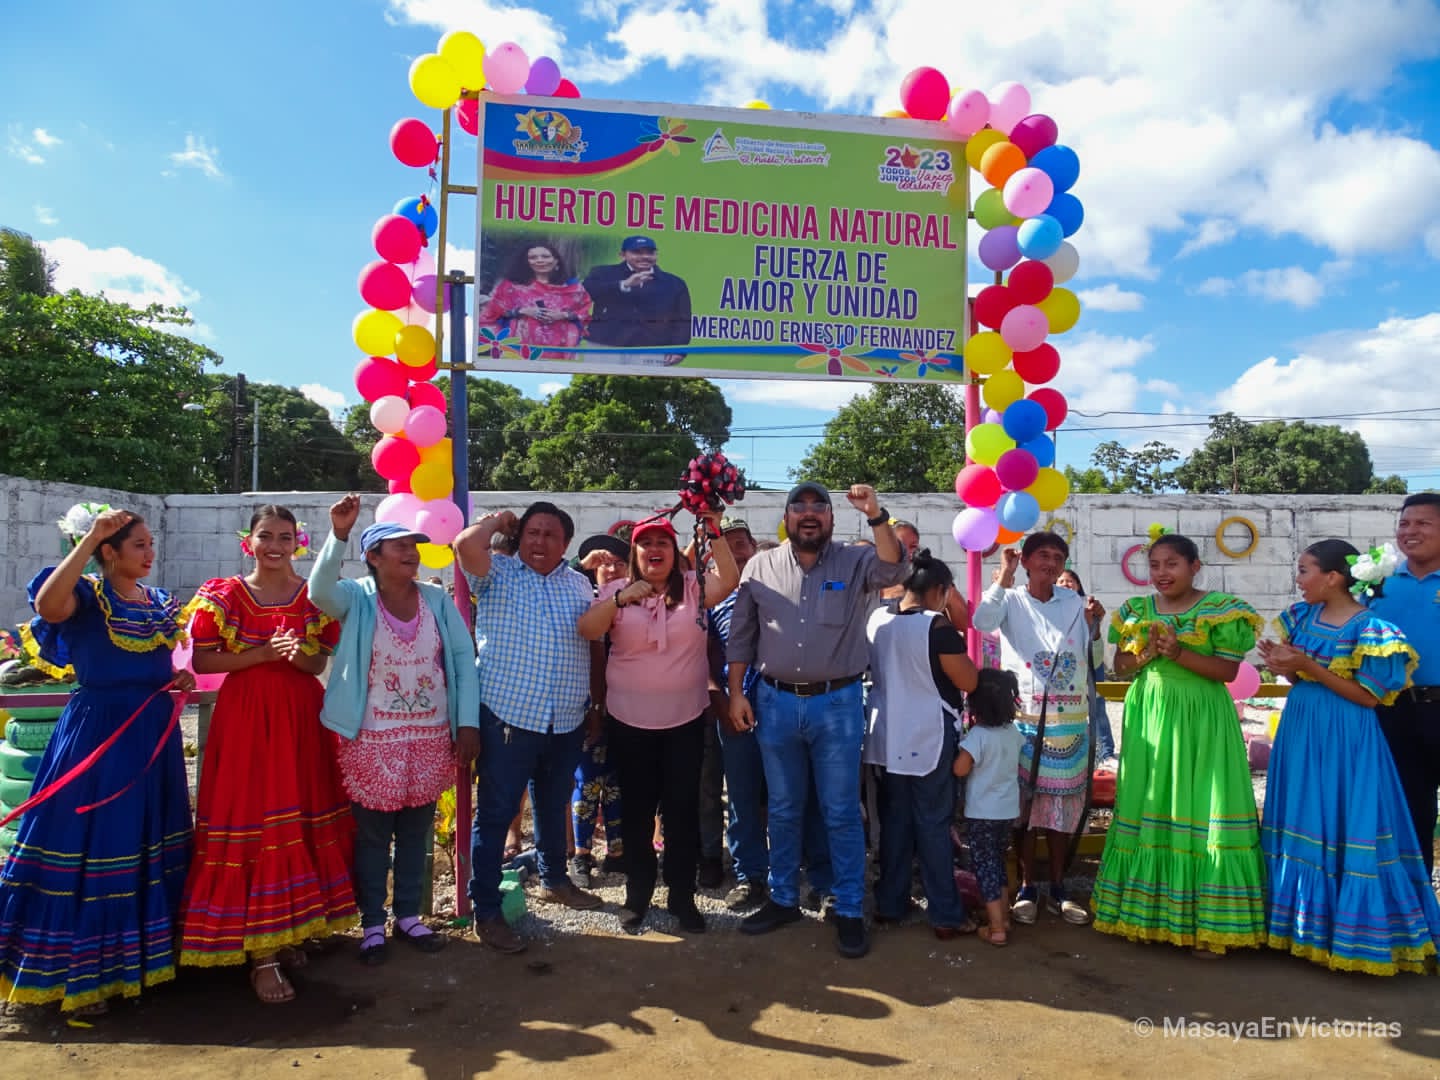 Familias de Masaya disfrutarán de Huerto Medicinal gratuito en el mercado Ernesto Fernández